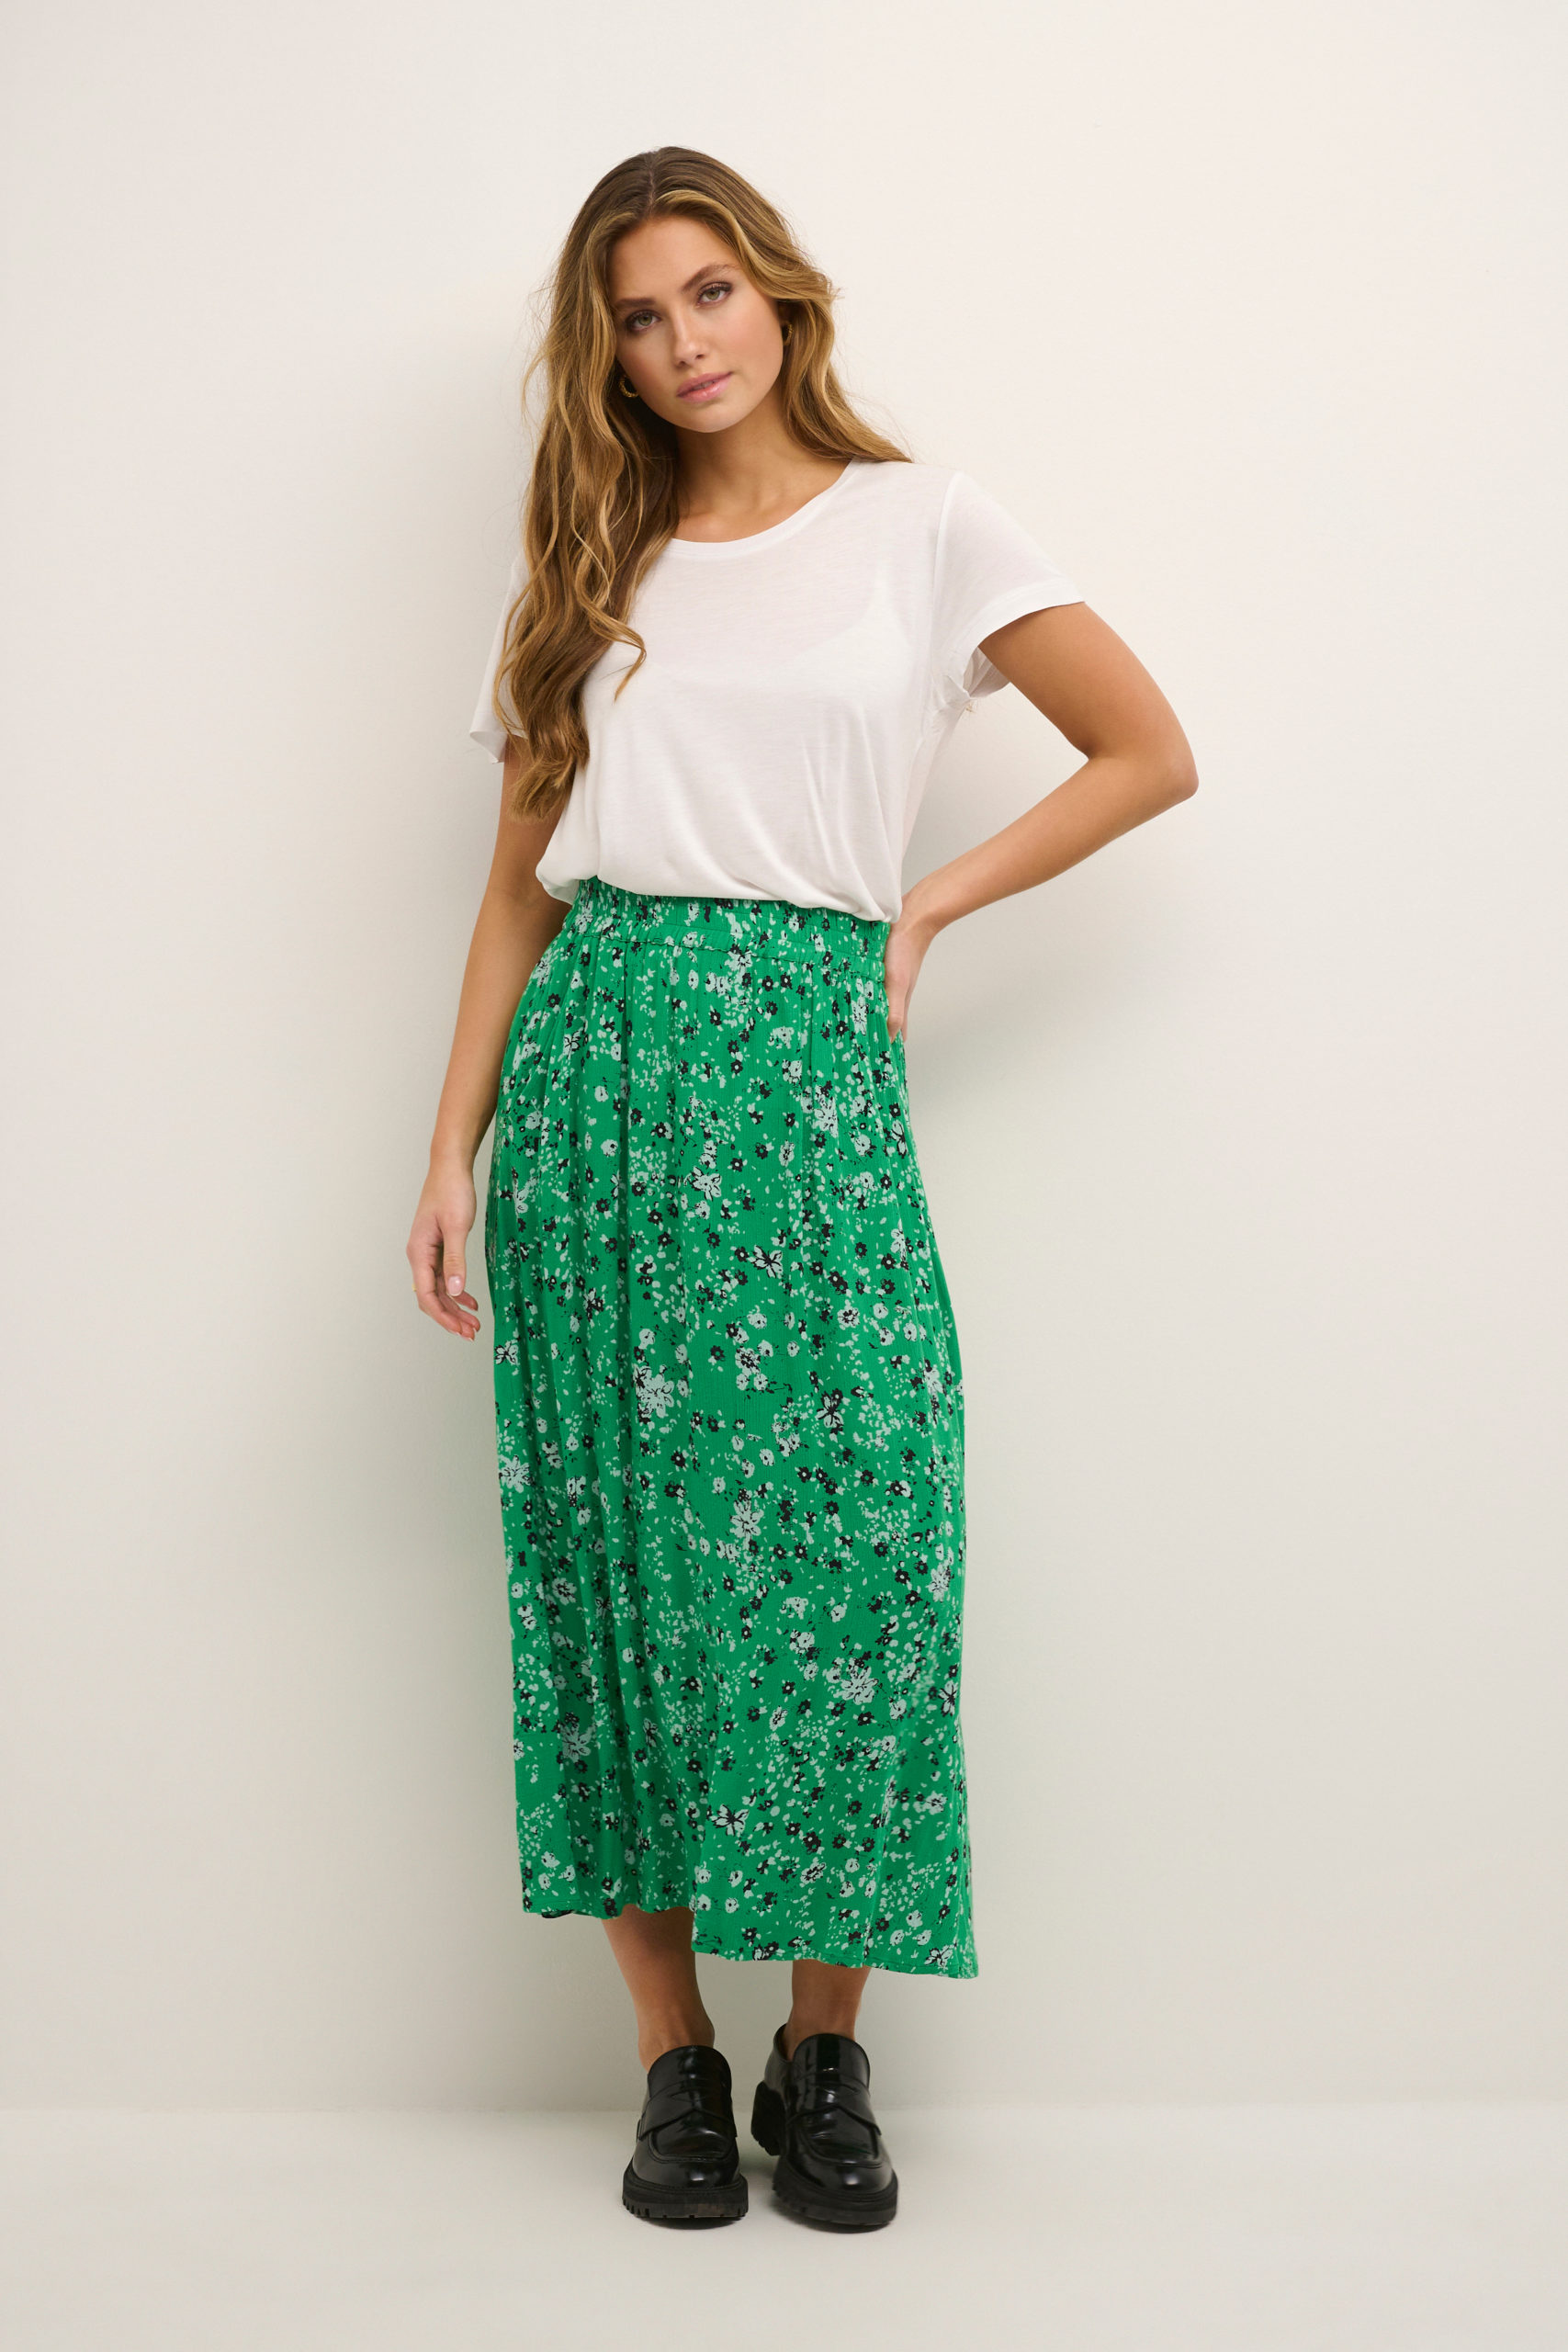 KAvilia Amber Skirt green